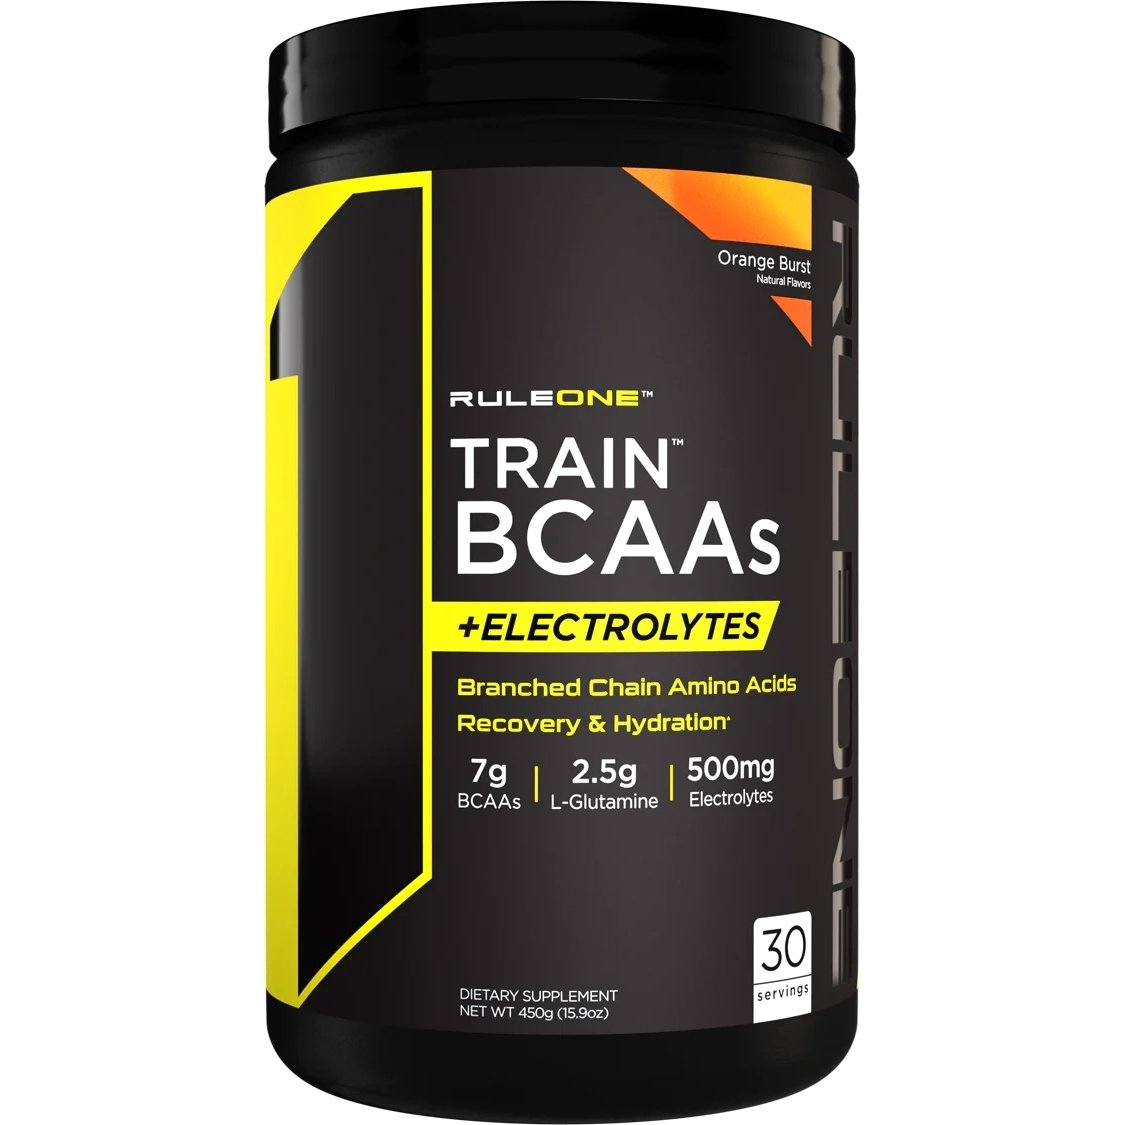 Аминокислота BCAA Rule 1 Train BCAAs + Electrolytes, 450 грамм Апельсин,  мл, Rule One Proteins. BCAA. Снижение веса Восстановление Антикатаболические свойства Сухая мышечная масса 